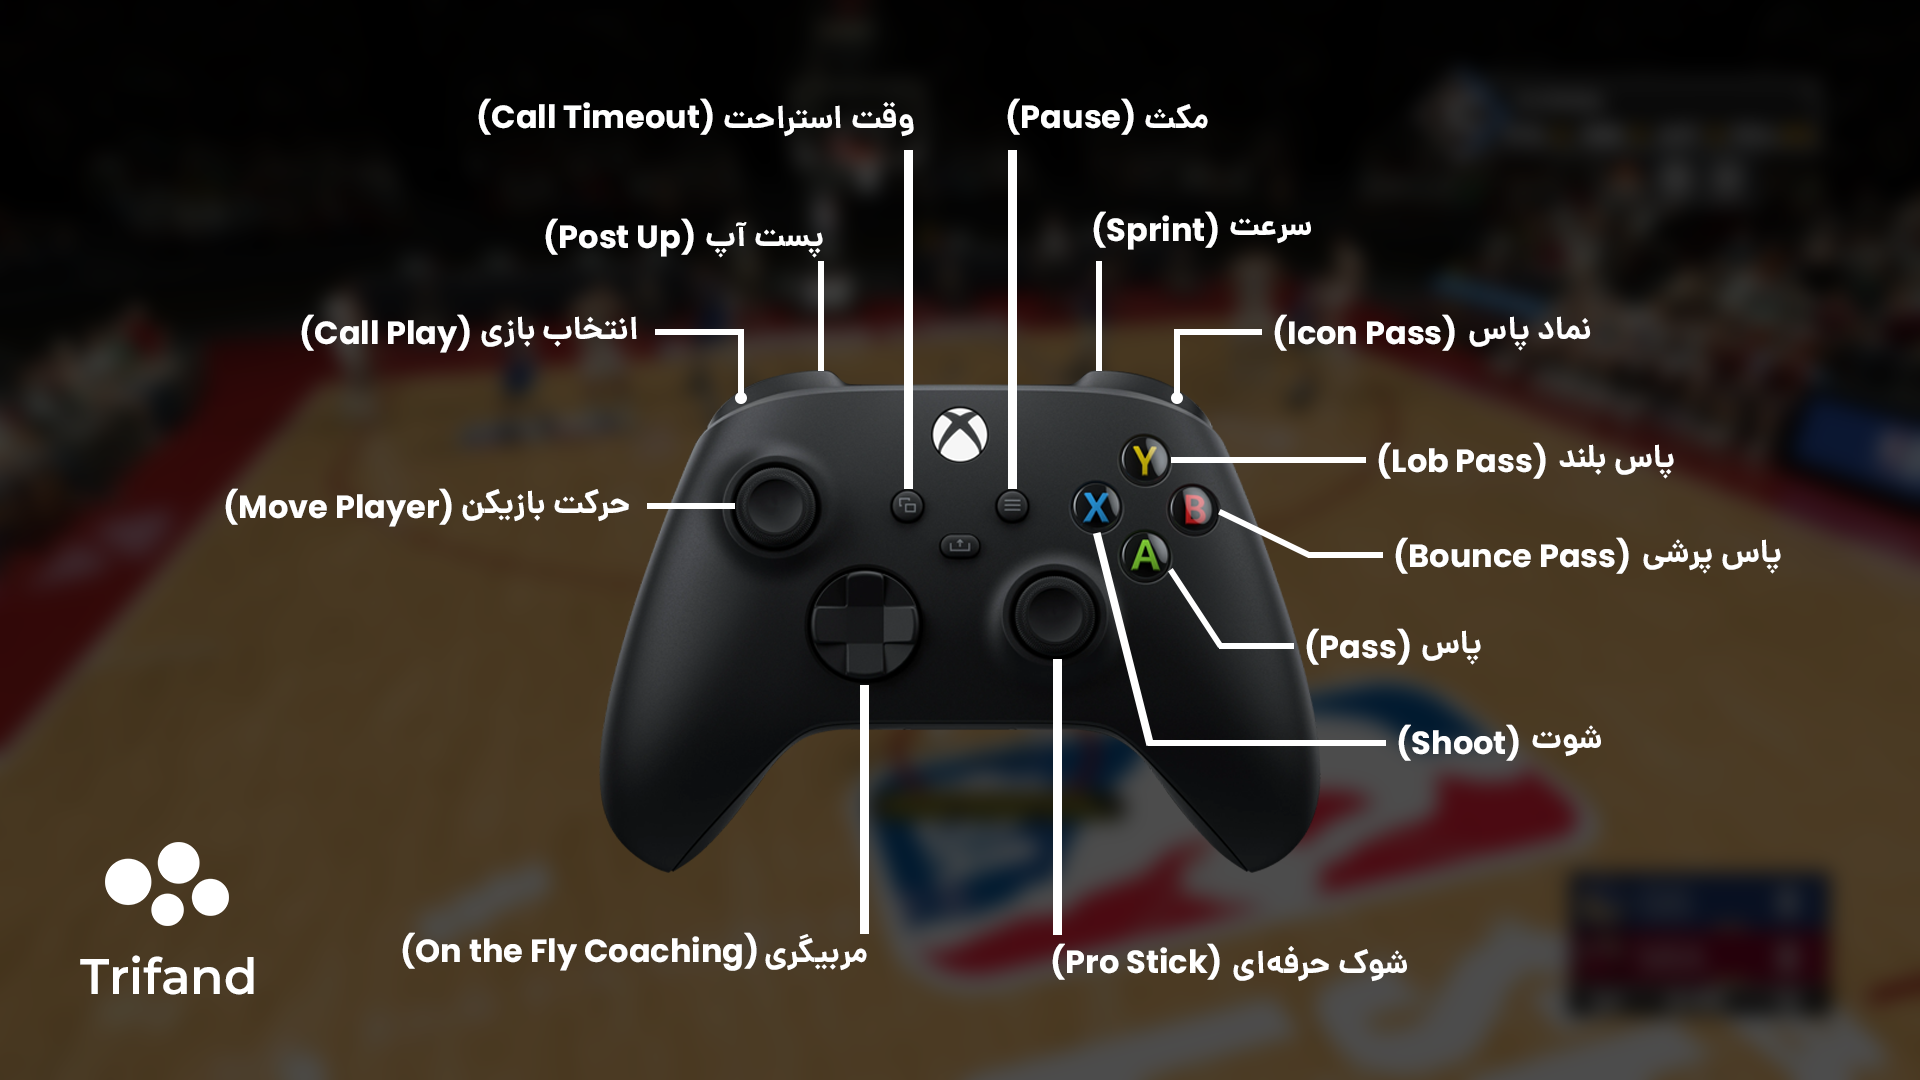 راهنمای استفاده از کنترلر در بازی بسکتبال NBA 2k23 در حمله | تریفند